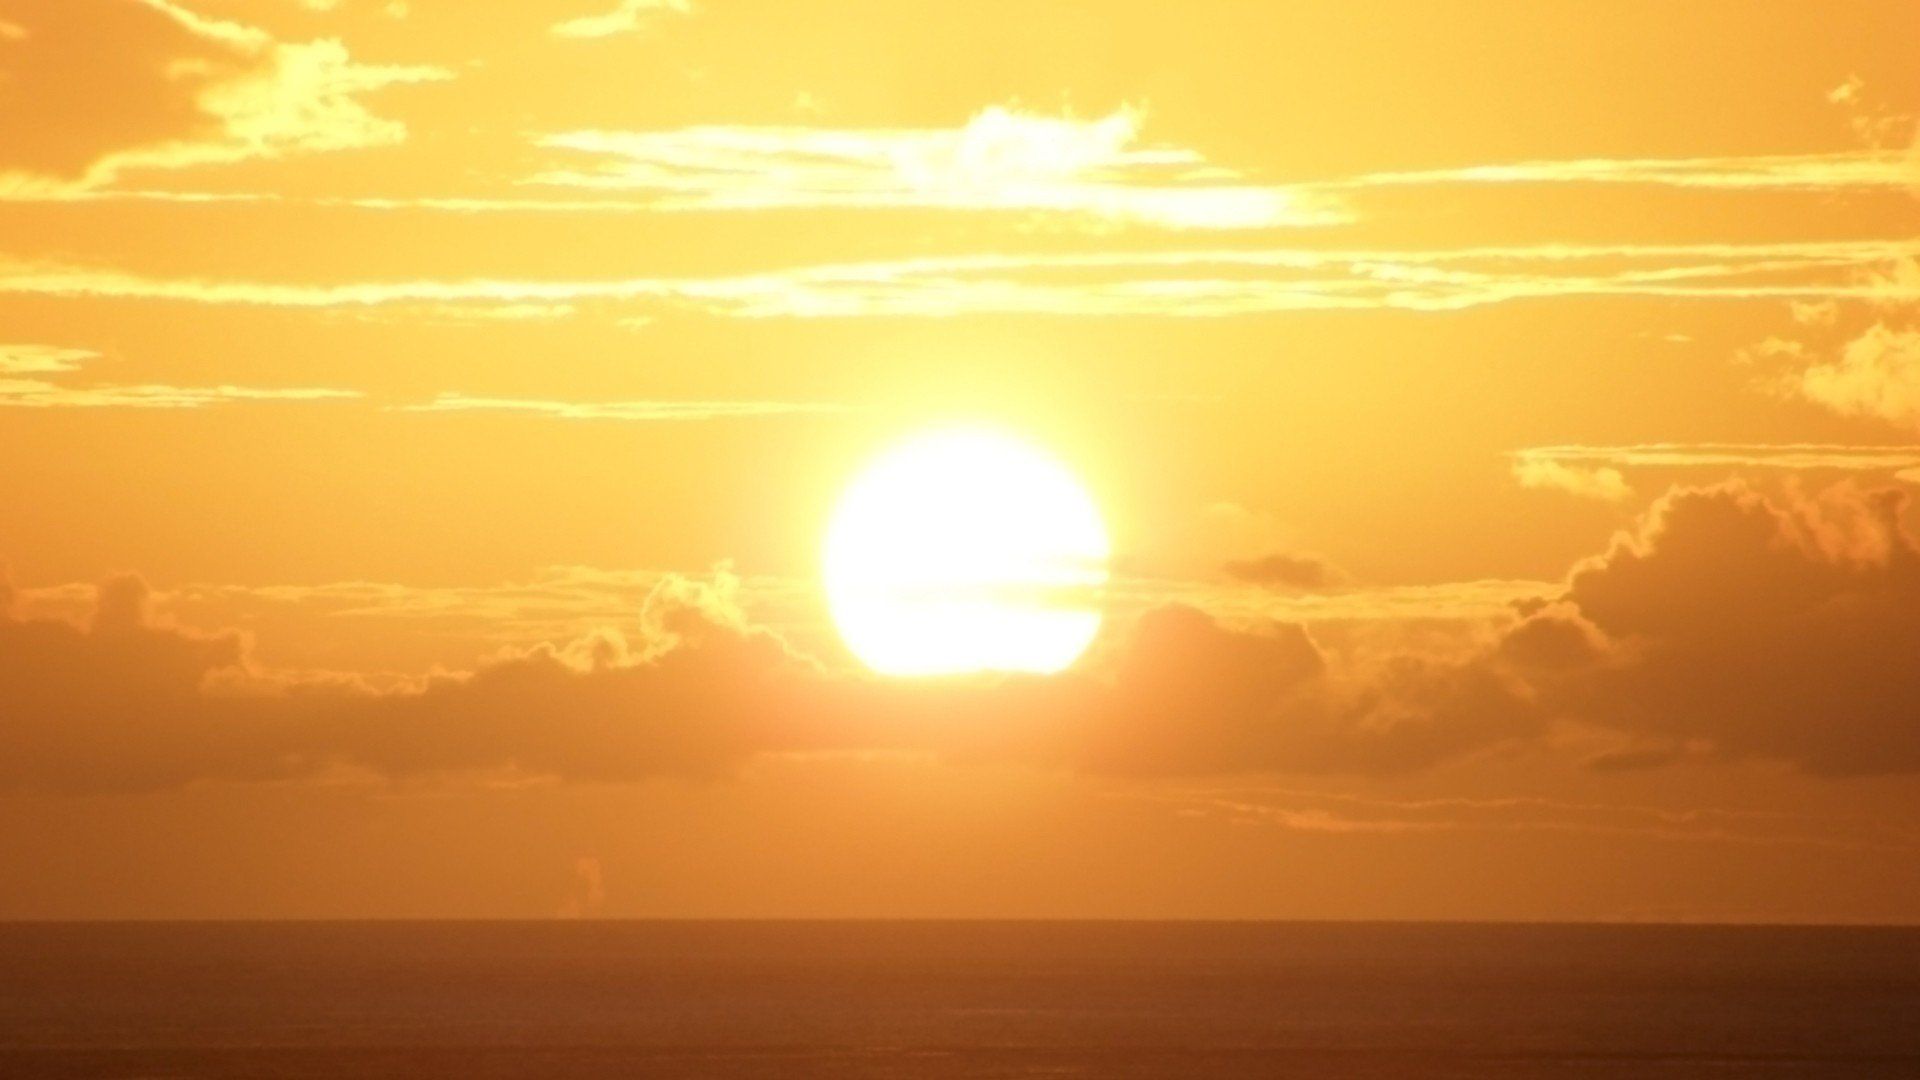 The sun setting over the ocean - Sun